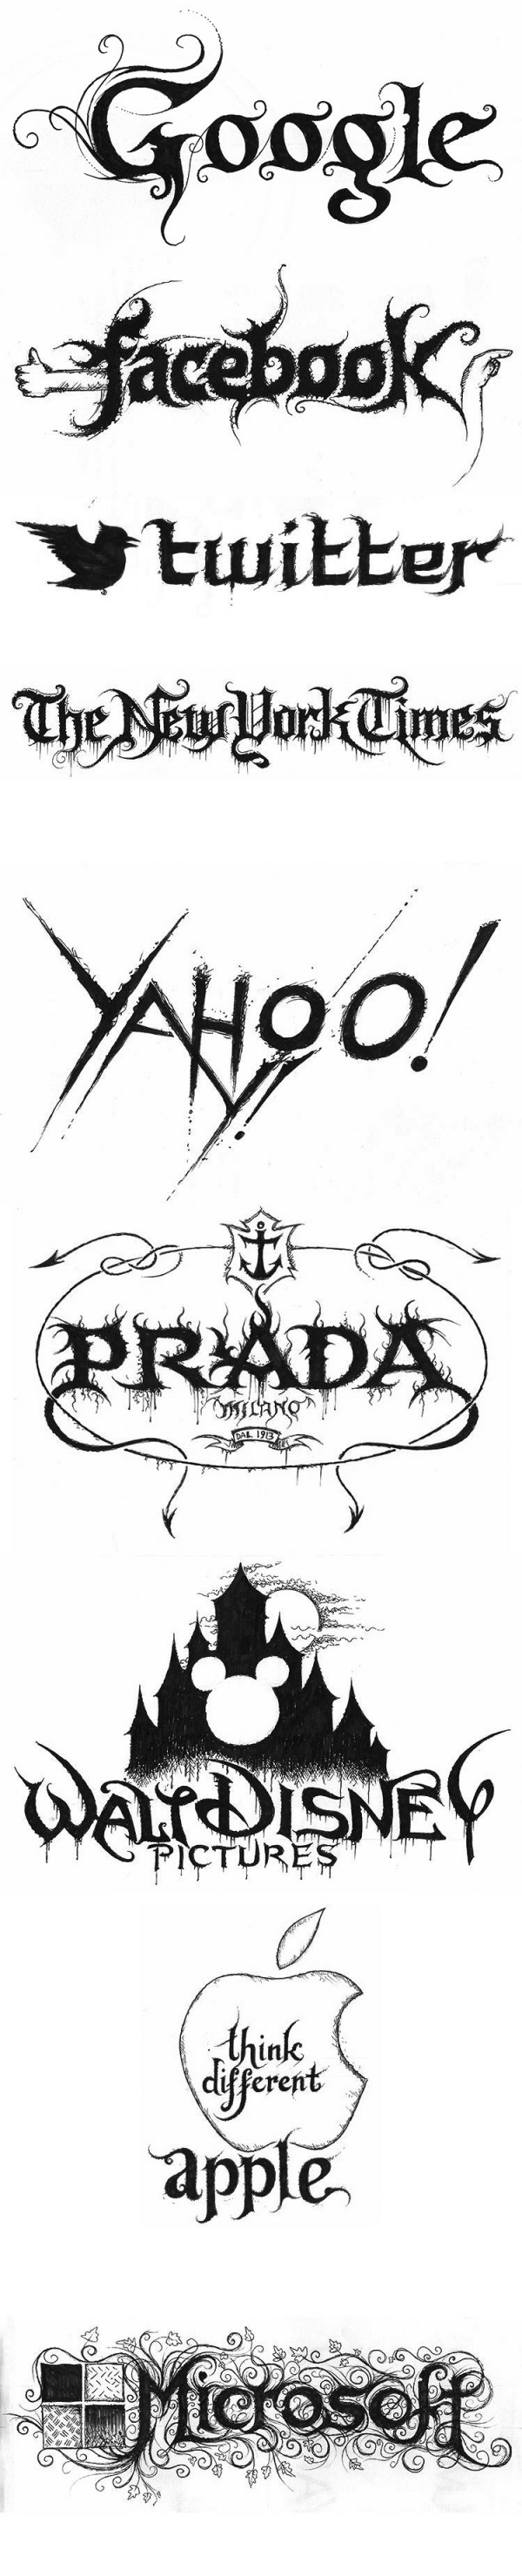 Logos de empresas famosas como bandas de heavy metal